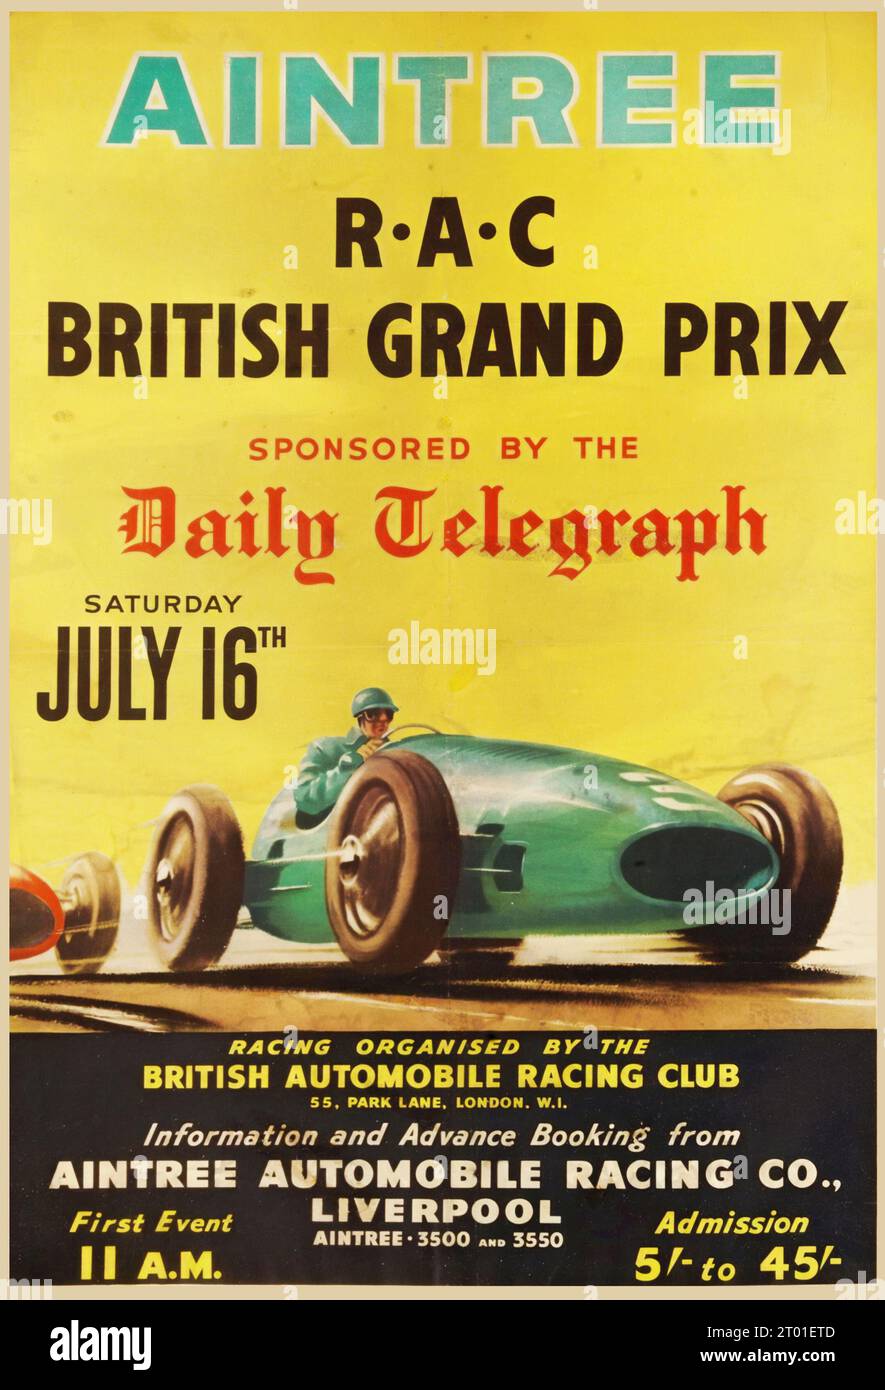 Aintree Automobile Racing Co, britischer Grand Prix, Rennposter, Liverpool R.A.C. britischer Grand Prix, British Automobile Racing Club, gesponsert vom Daily Telegraph - Großbritannien 1955 Stockfoto